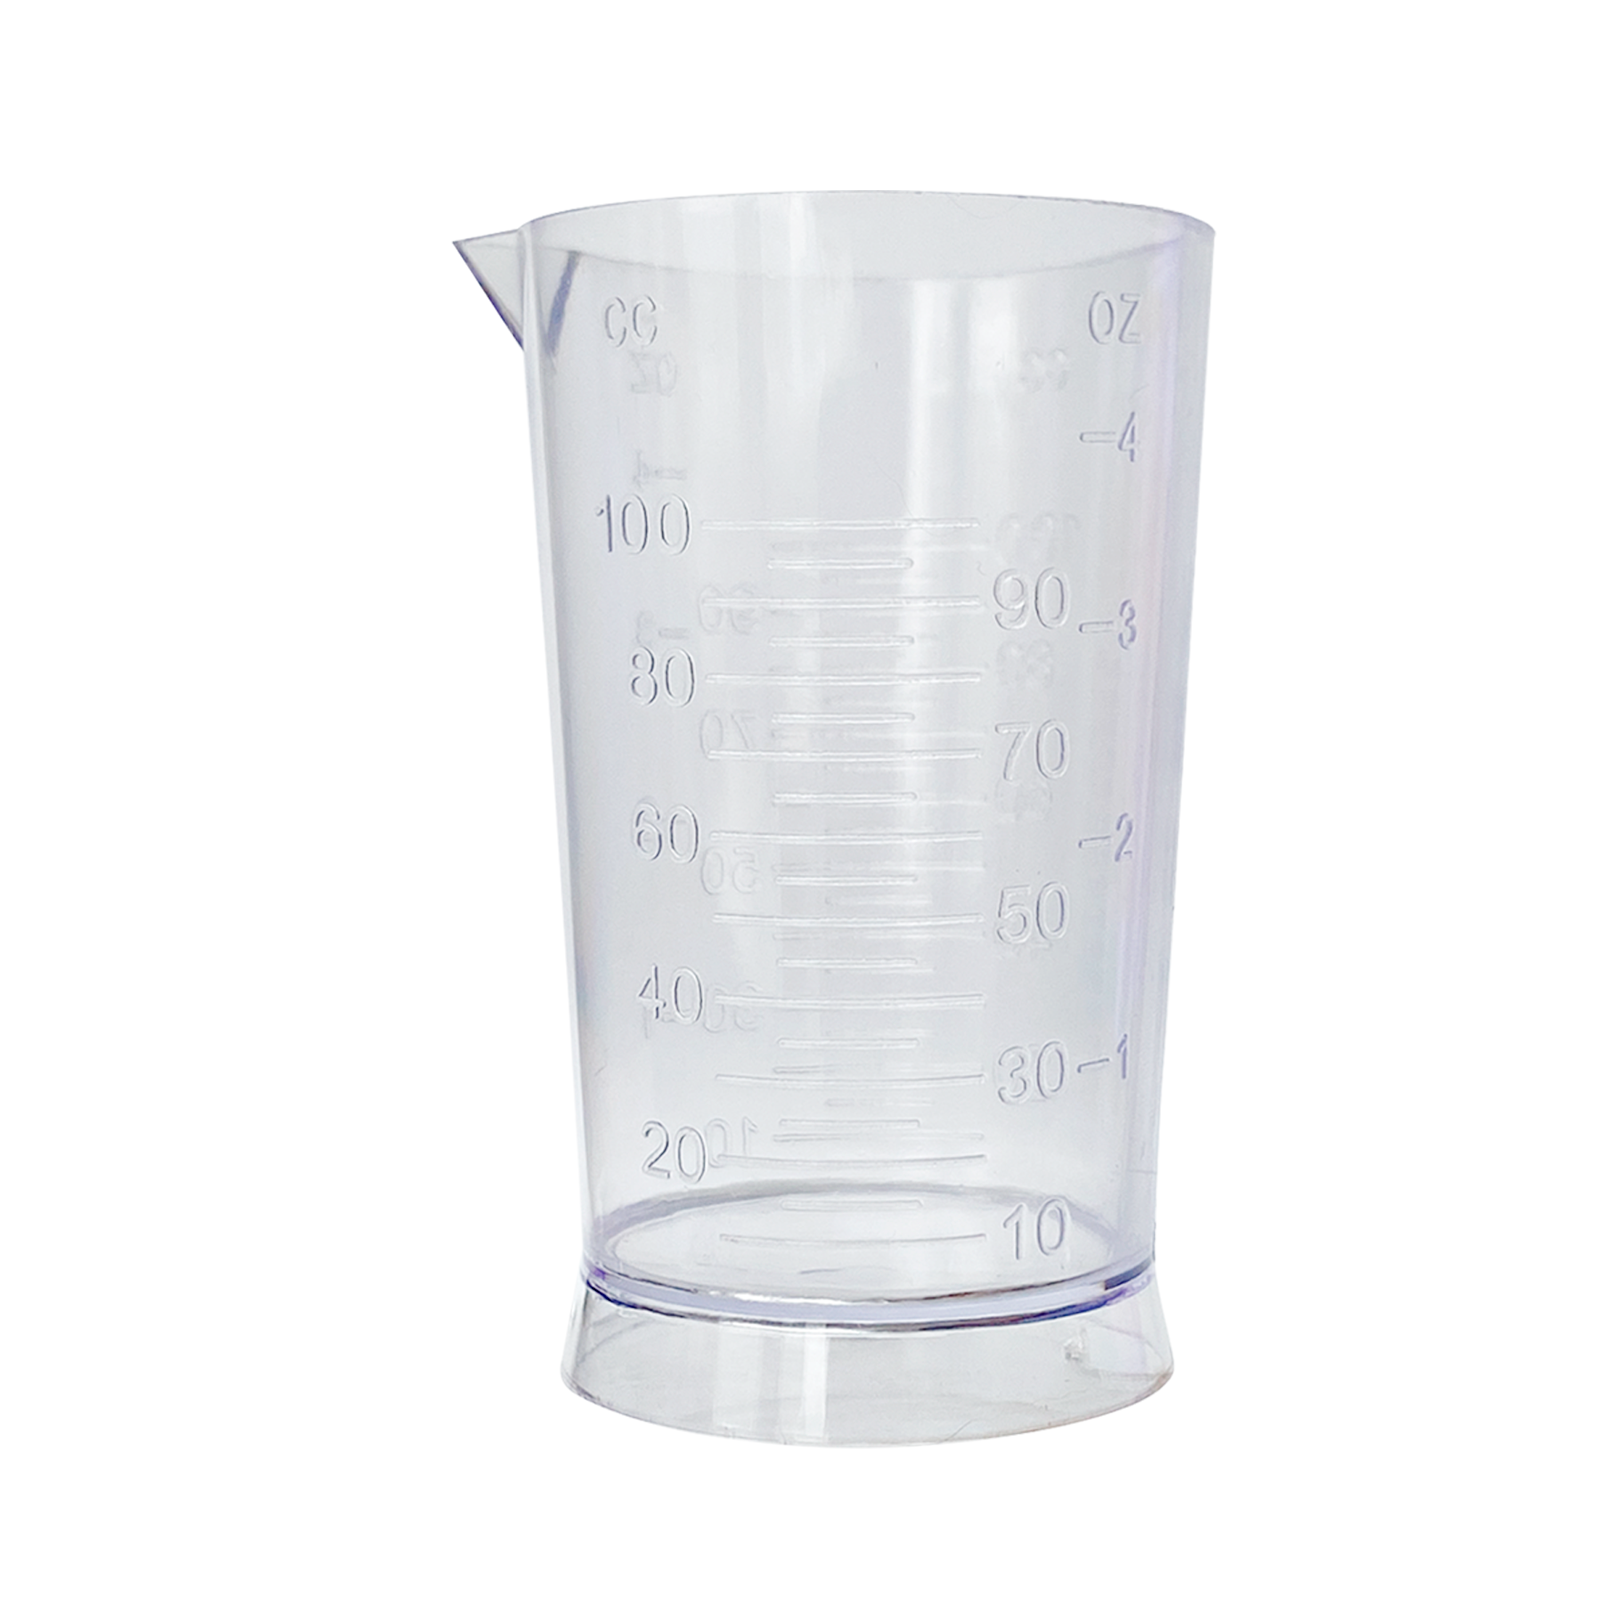 Стакан Charites мерная емкость для жидкостей и сыпучих веществ 100 мл стакан для воды пластиковый портативный космический стаканчик спорт большая емкость удобный кубок